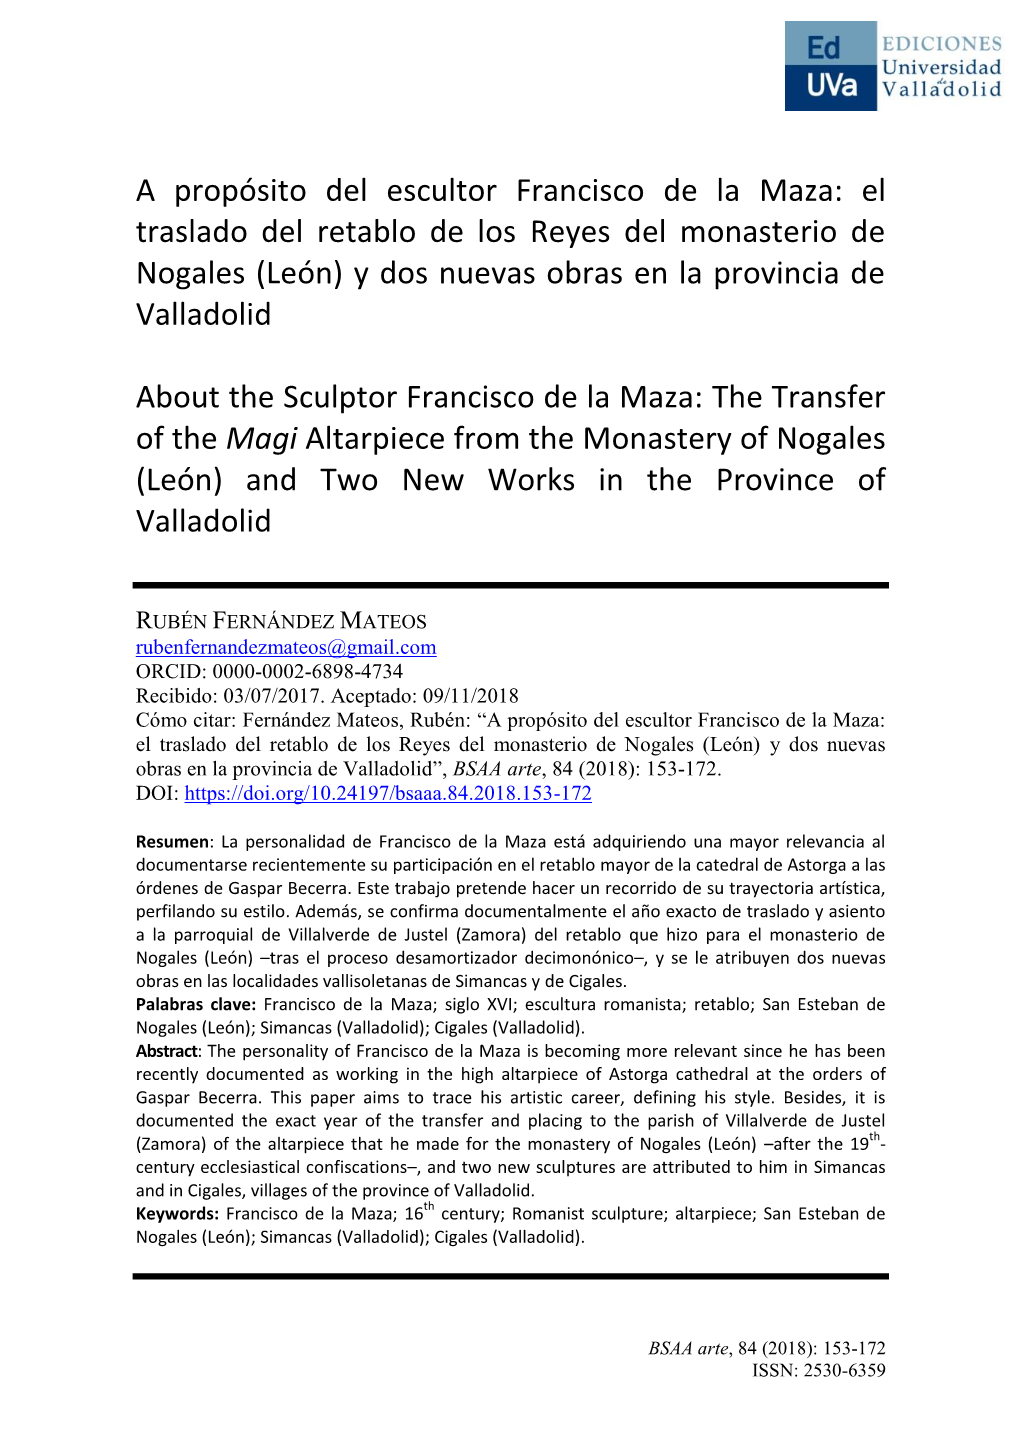 A Propósito Del Escultor Francisco De La Maza: El Traslado Del Retablo De Los Reyes Del Monasterio De Nogales (León) Y Dos Nuevas Obras En La Provincia De Valladolid